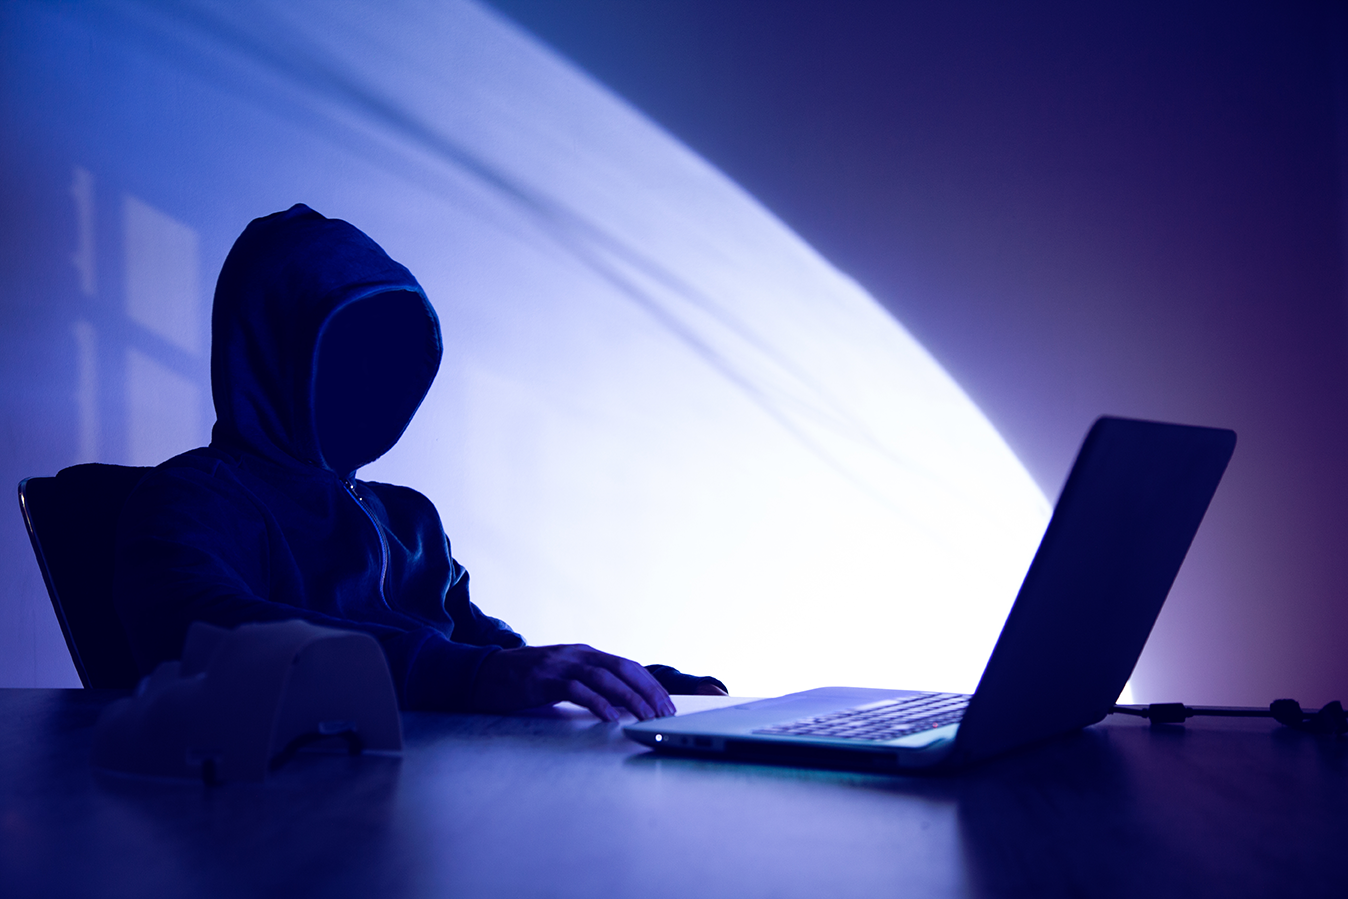 fondo oscuro con persona con apariencia de hacker frente a una computadora sobre un escritorio simulando un hacker con la noticia que una mujer muere a causa de un ciberataque en Alemania